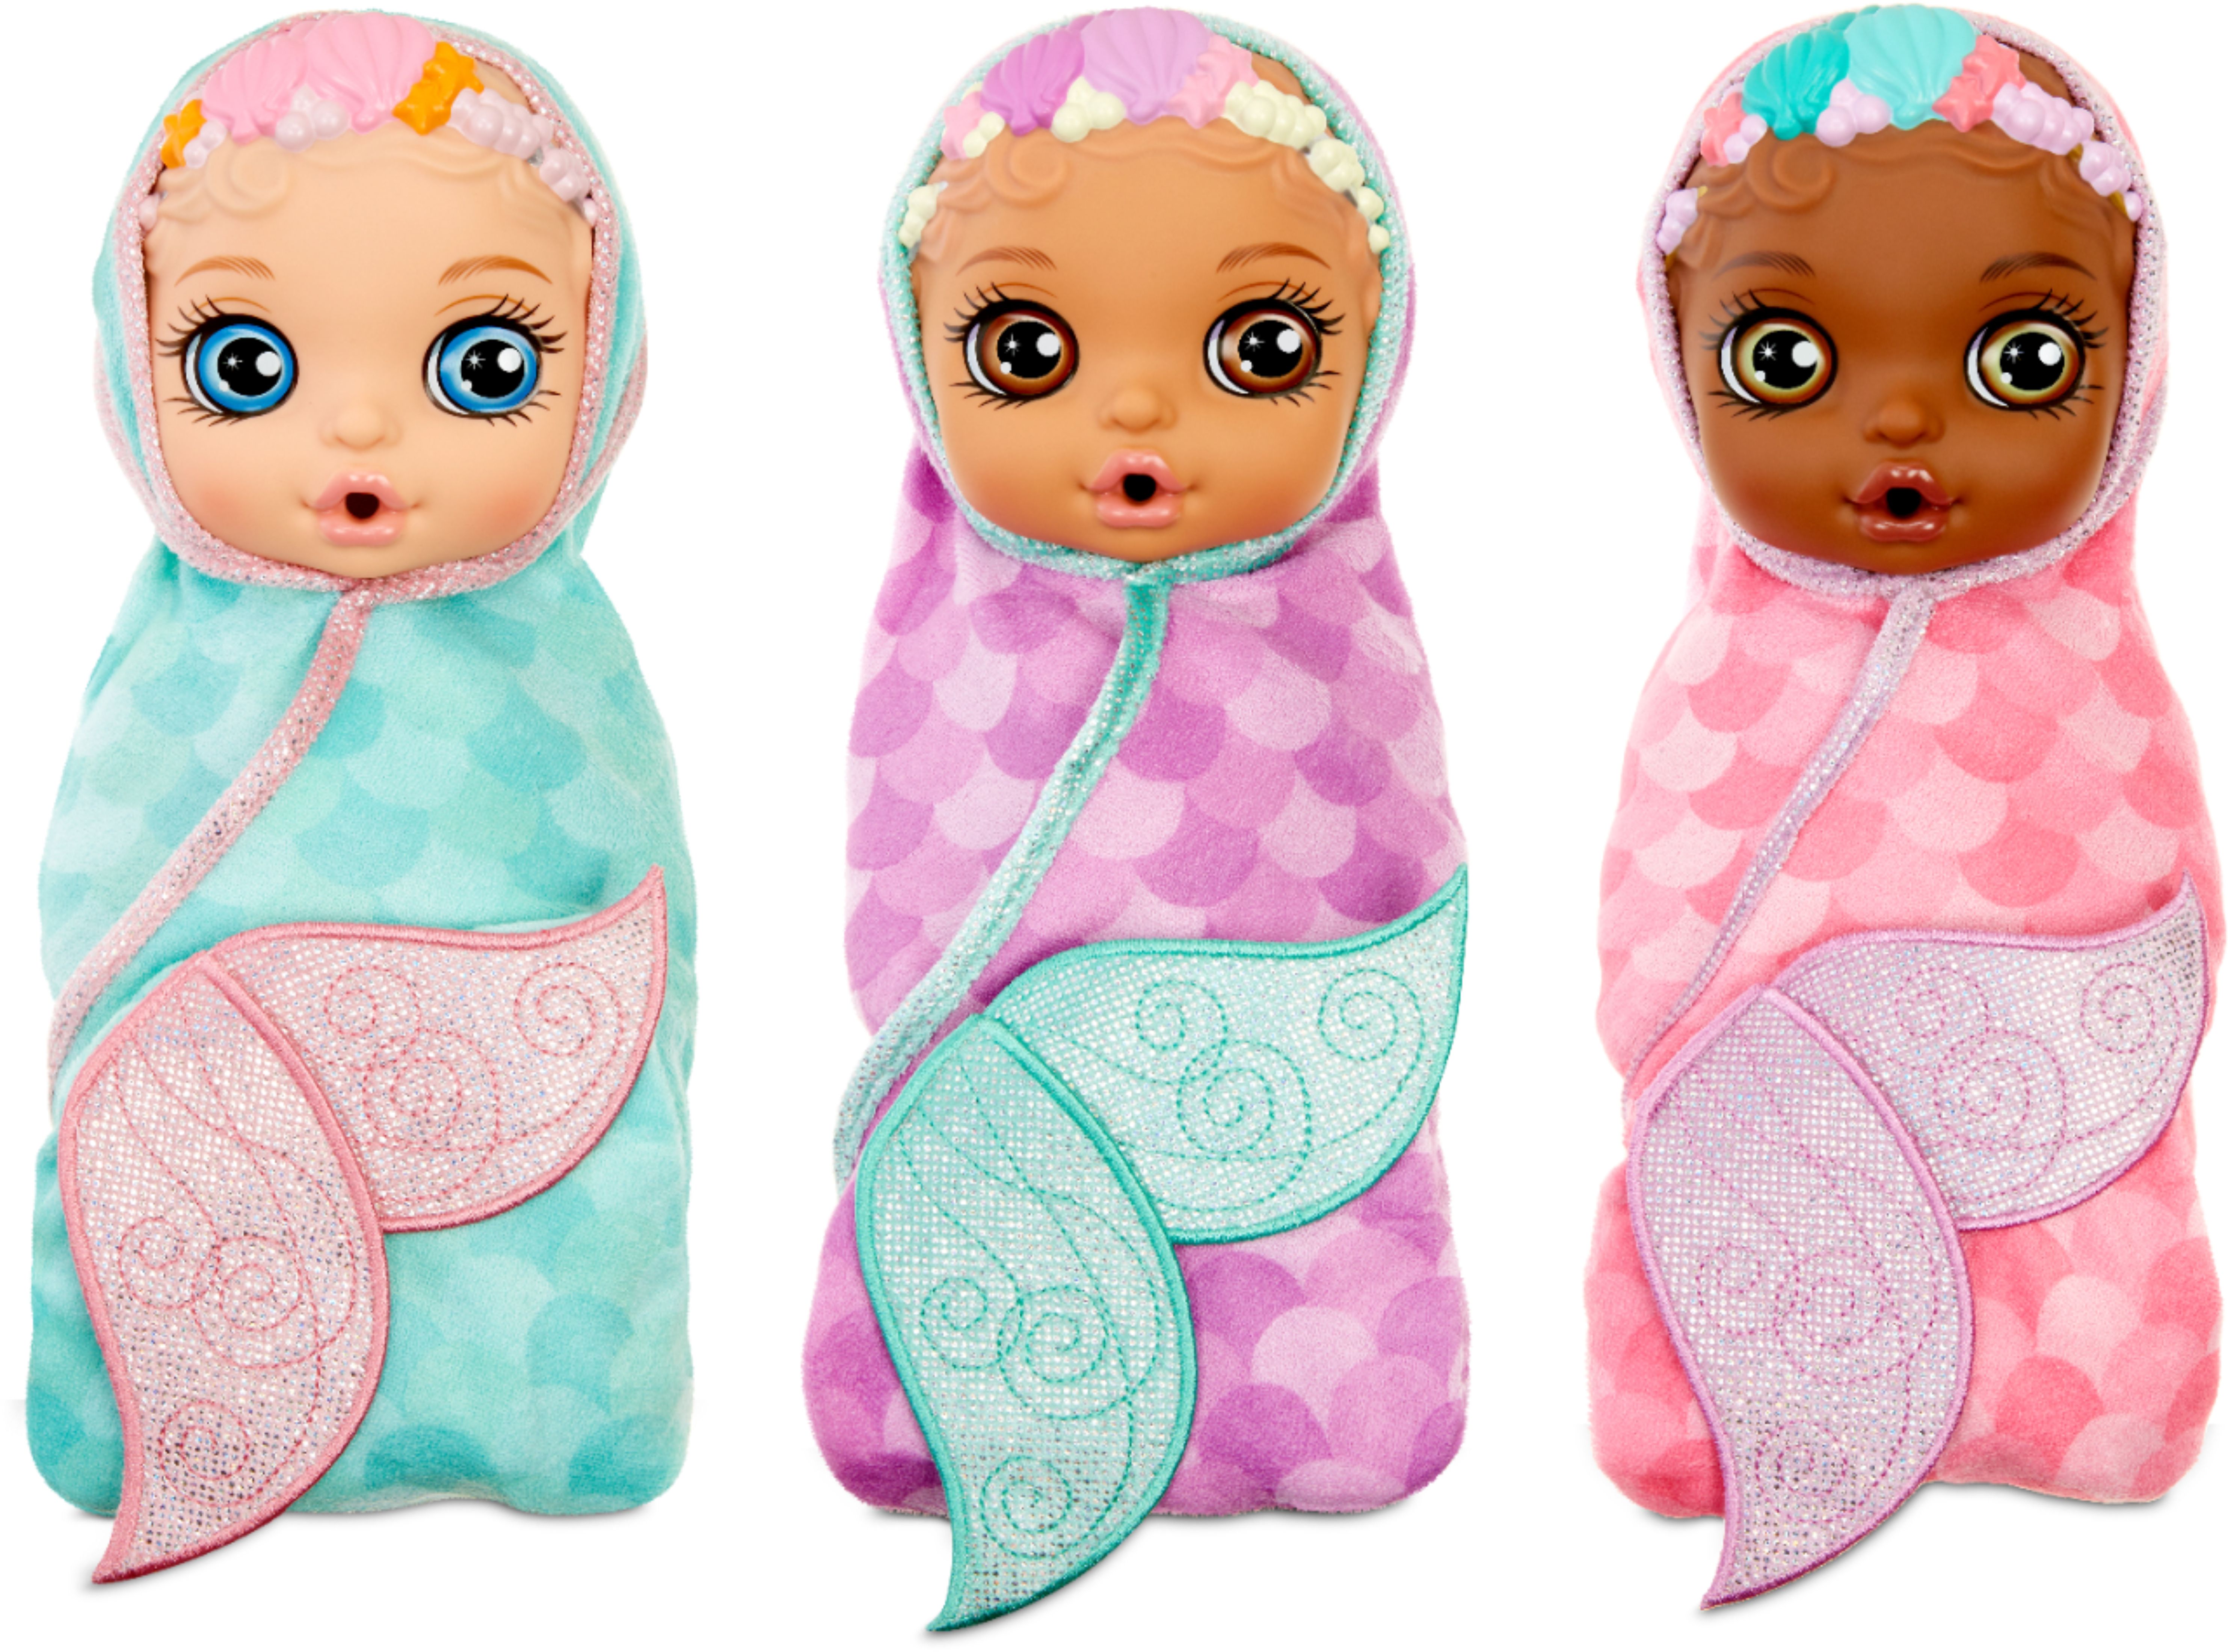 NEW GIANT Baby Born Surprise Dolls! 20+ Surprises!